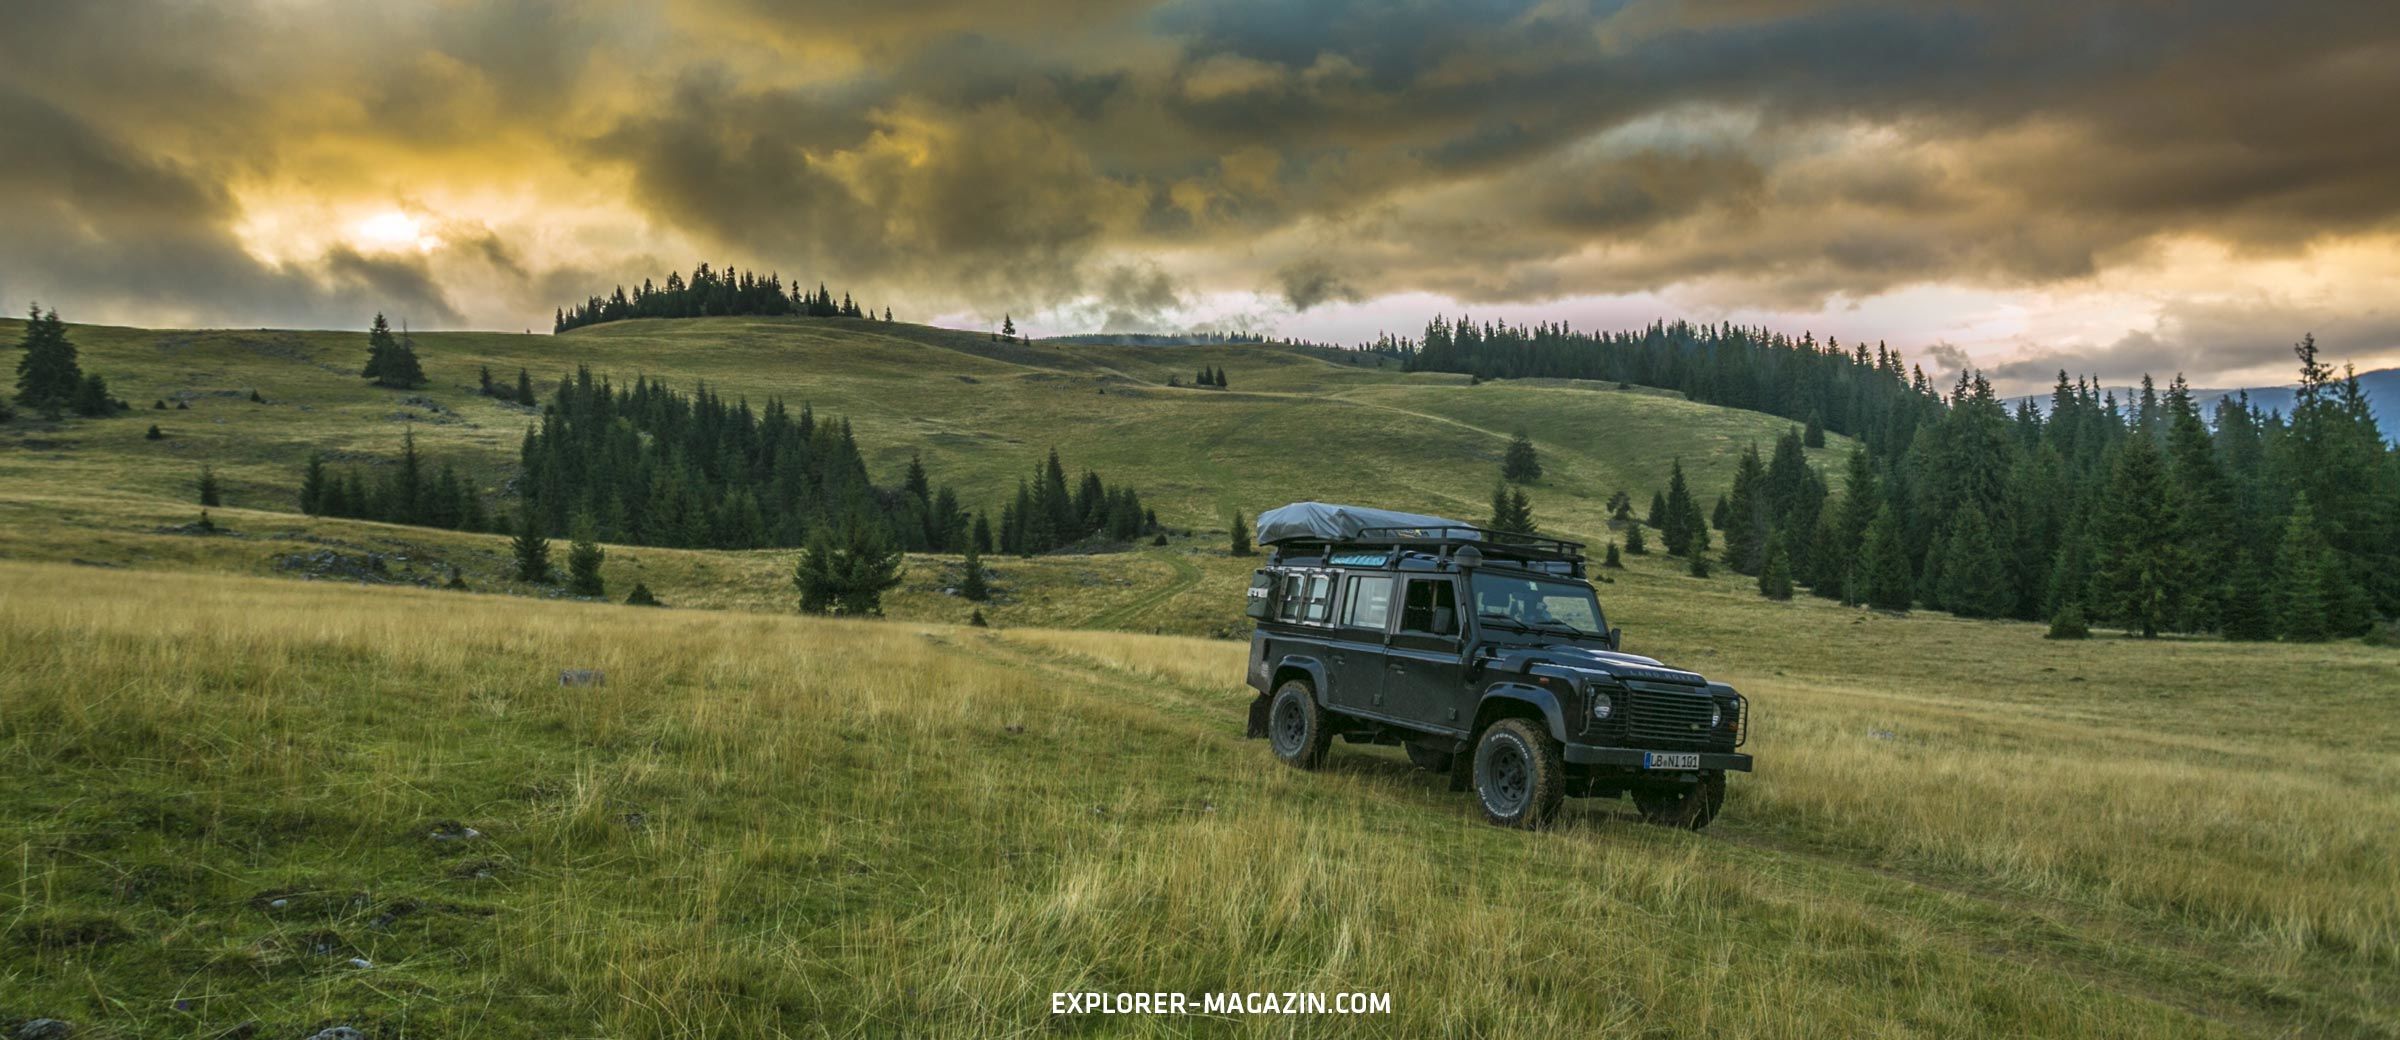 Rumänien offroad - Land Rover Defender - Zwischen Walachei und Transsilvanien